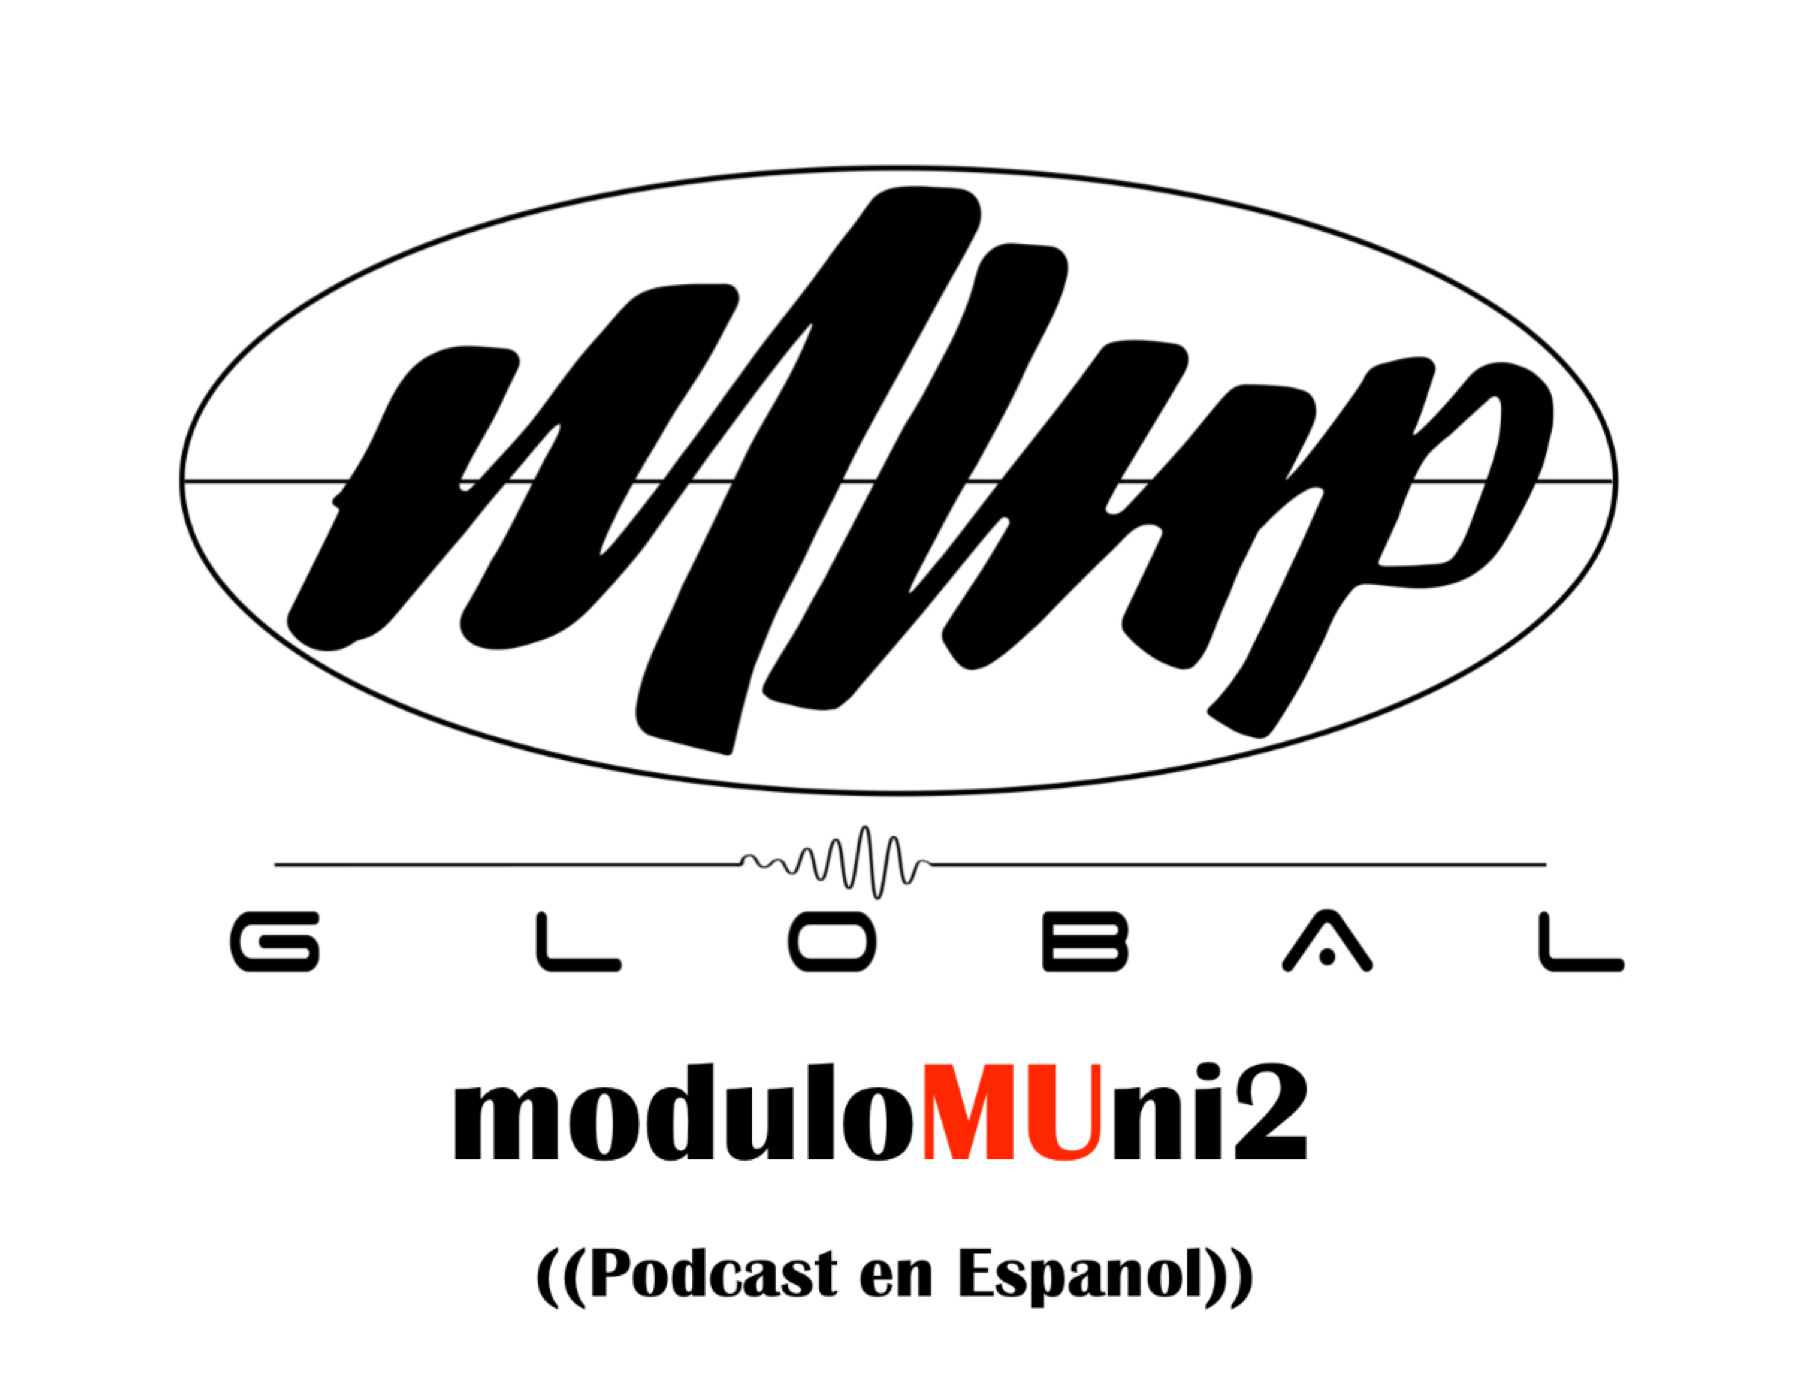 ModuloMUni2's podcast